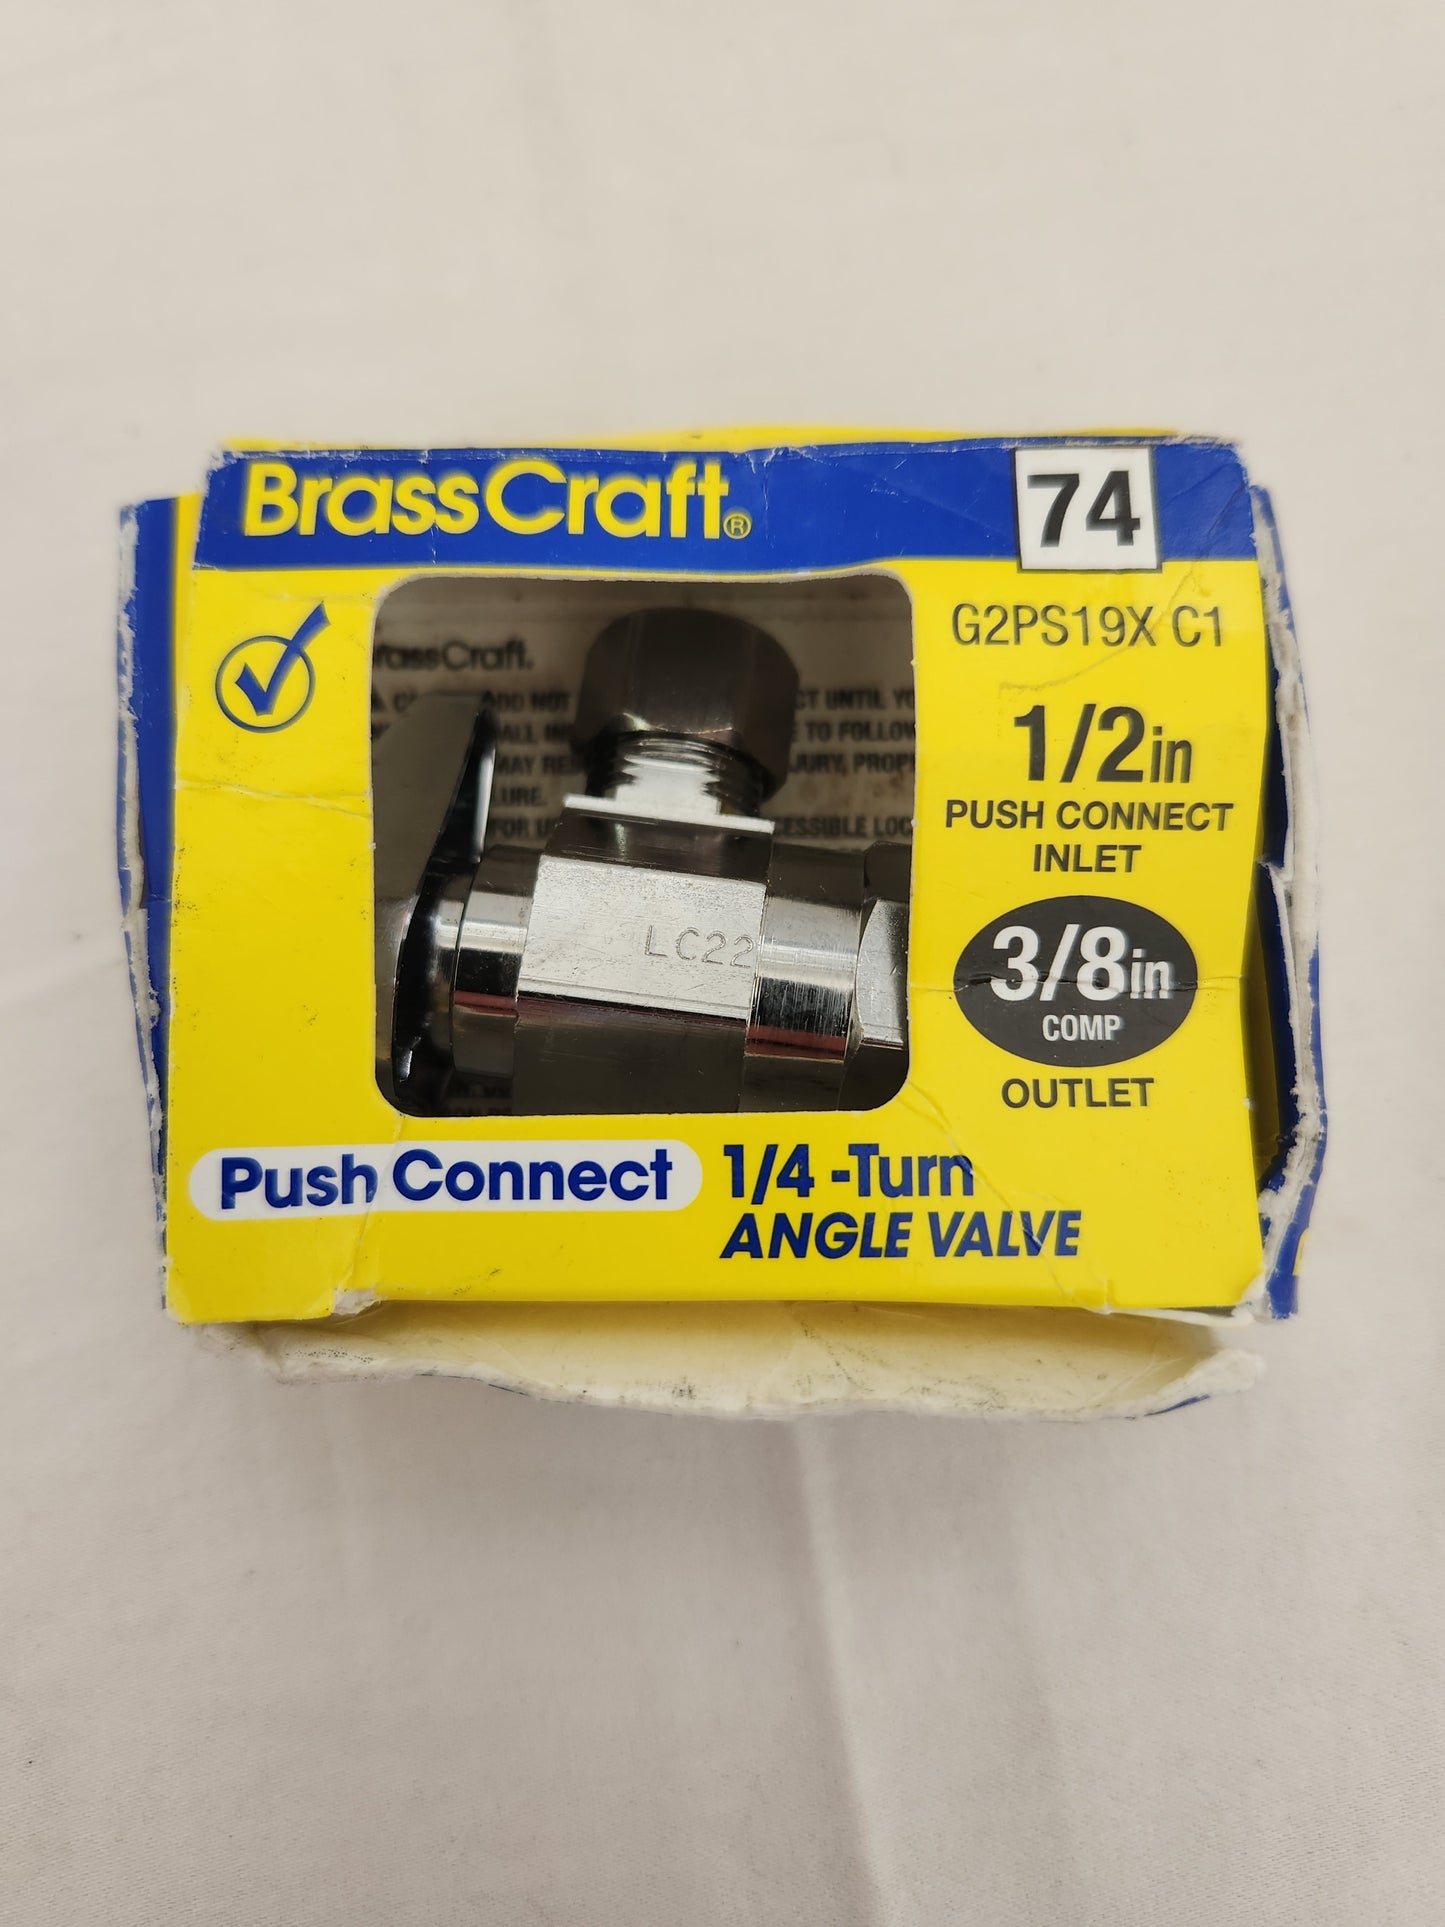 Brasscraft G2PS19X C1 1/2 in. 3/8 in. Brass Shut-Off Valve (box damaged)